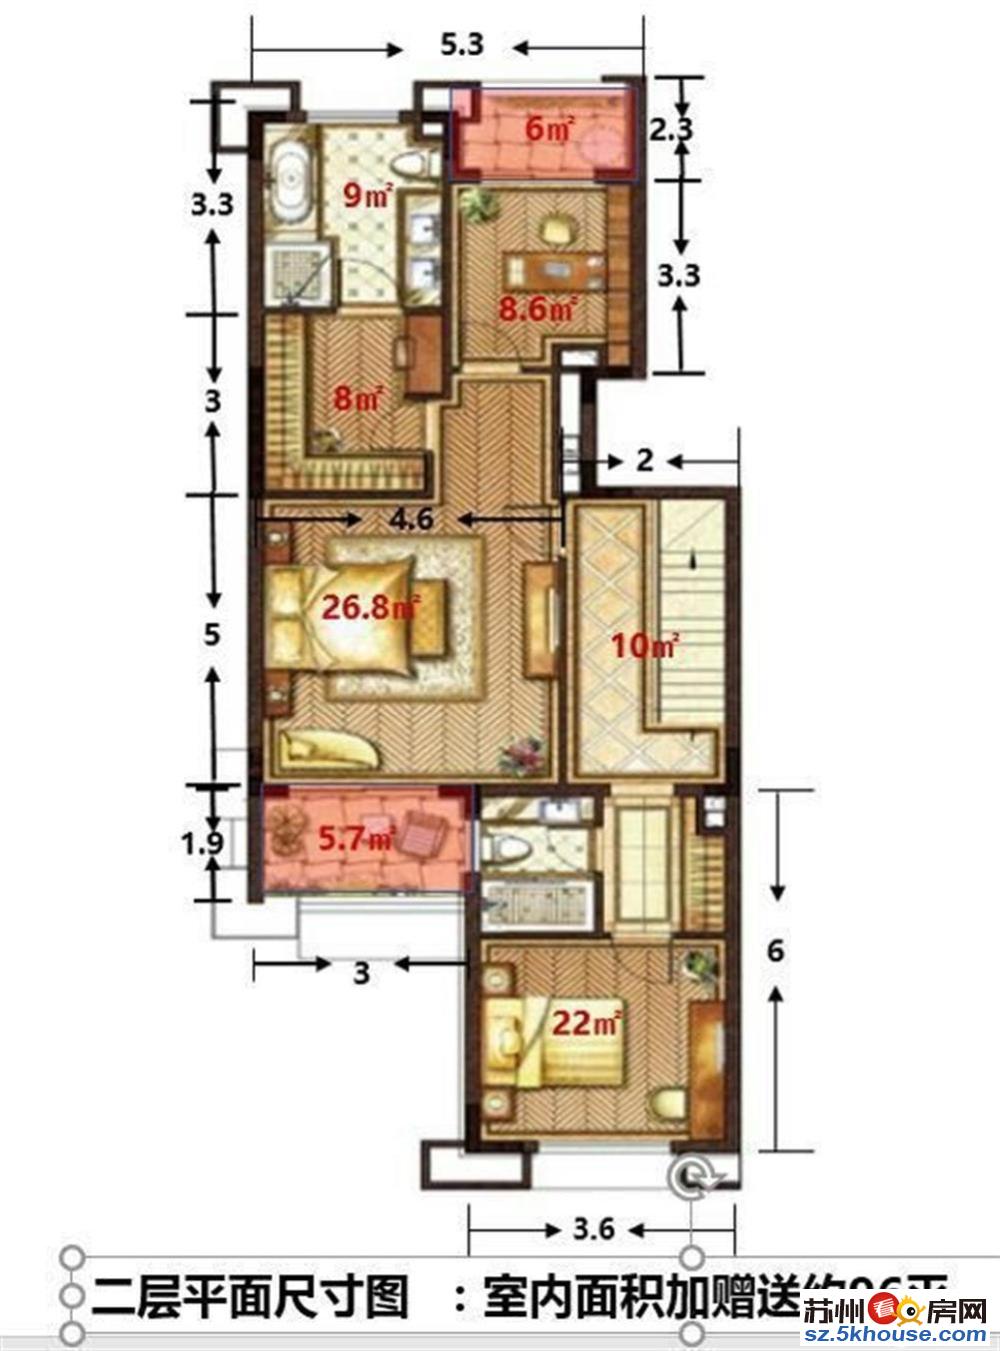 苏州市区豪装公寓复式结构买一 层得两层